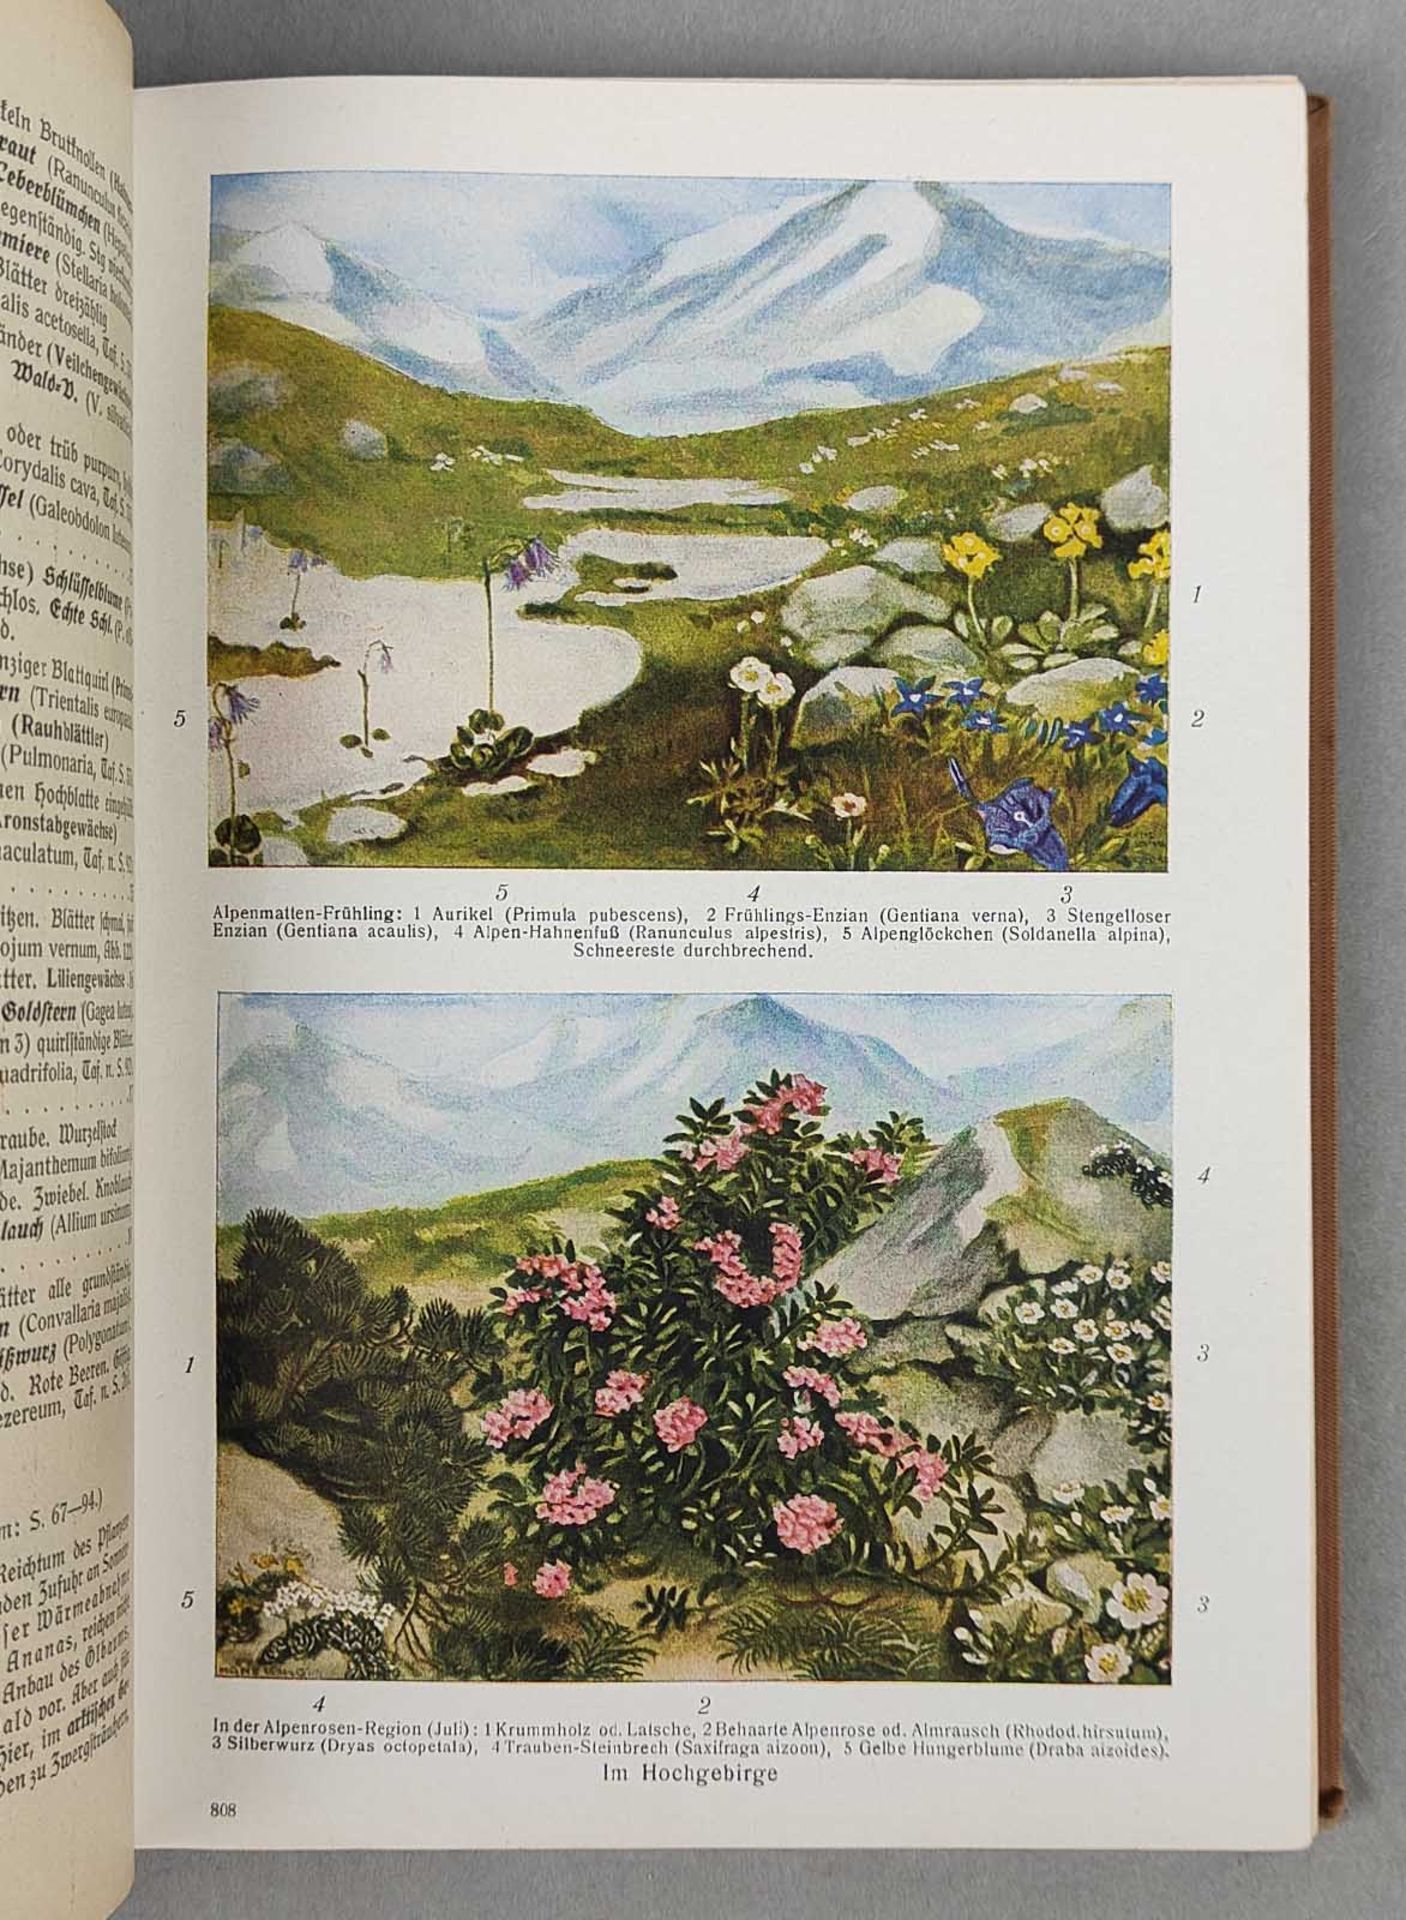 Pflanzen- und Tierkunde 1935 - Image 2 of 4